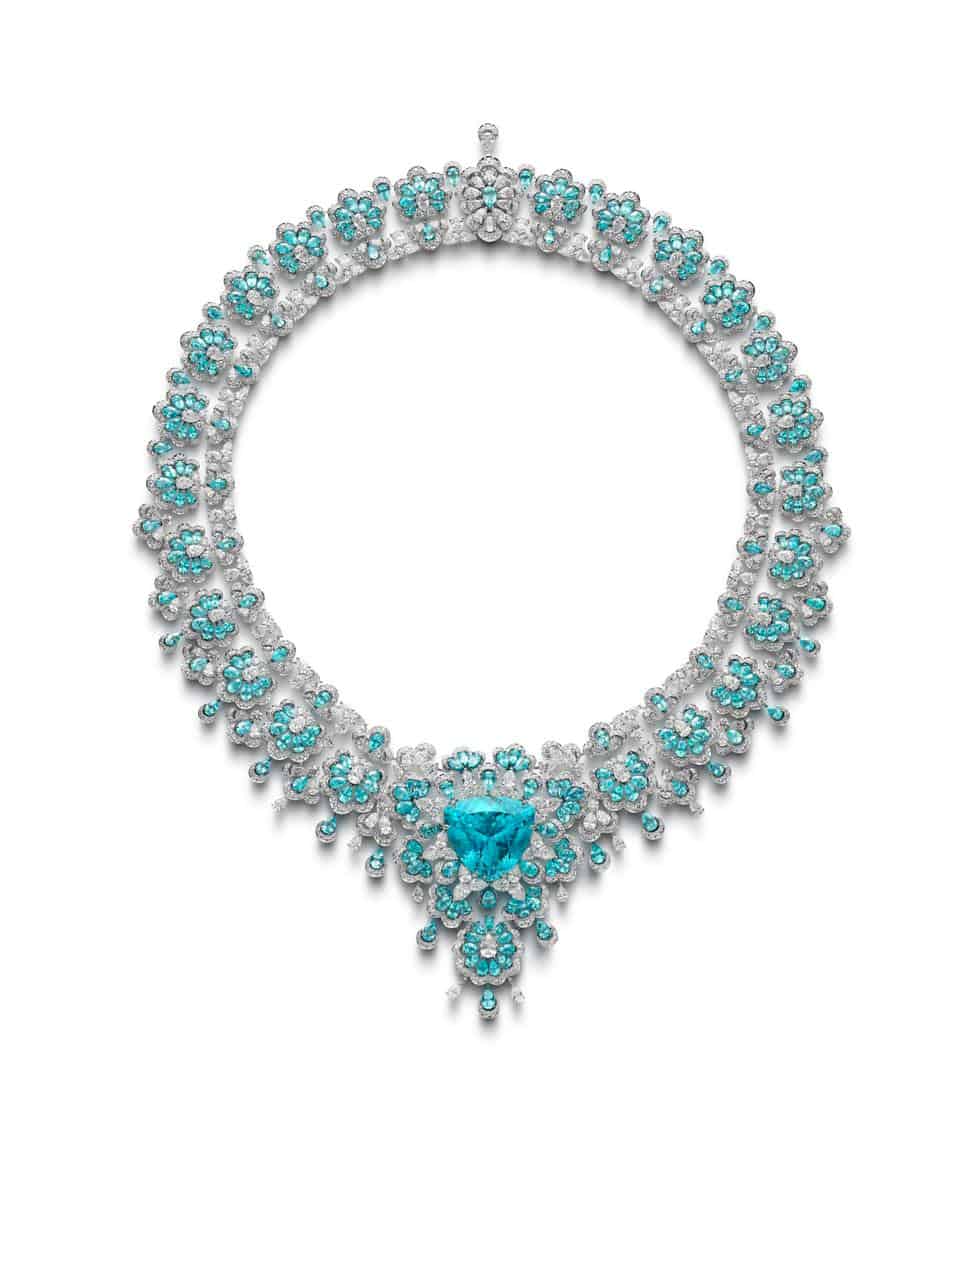 精緻的項鍊鑲嵌帕拉伊巴碧璽，成為蕭邦高級珠寶系列的新星